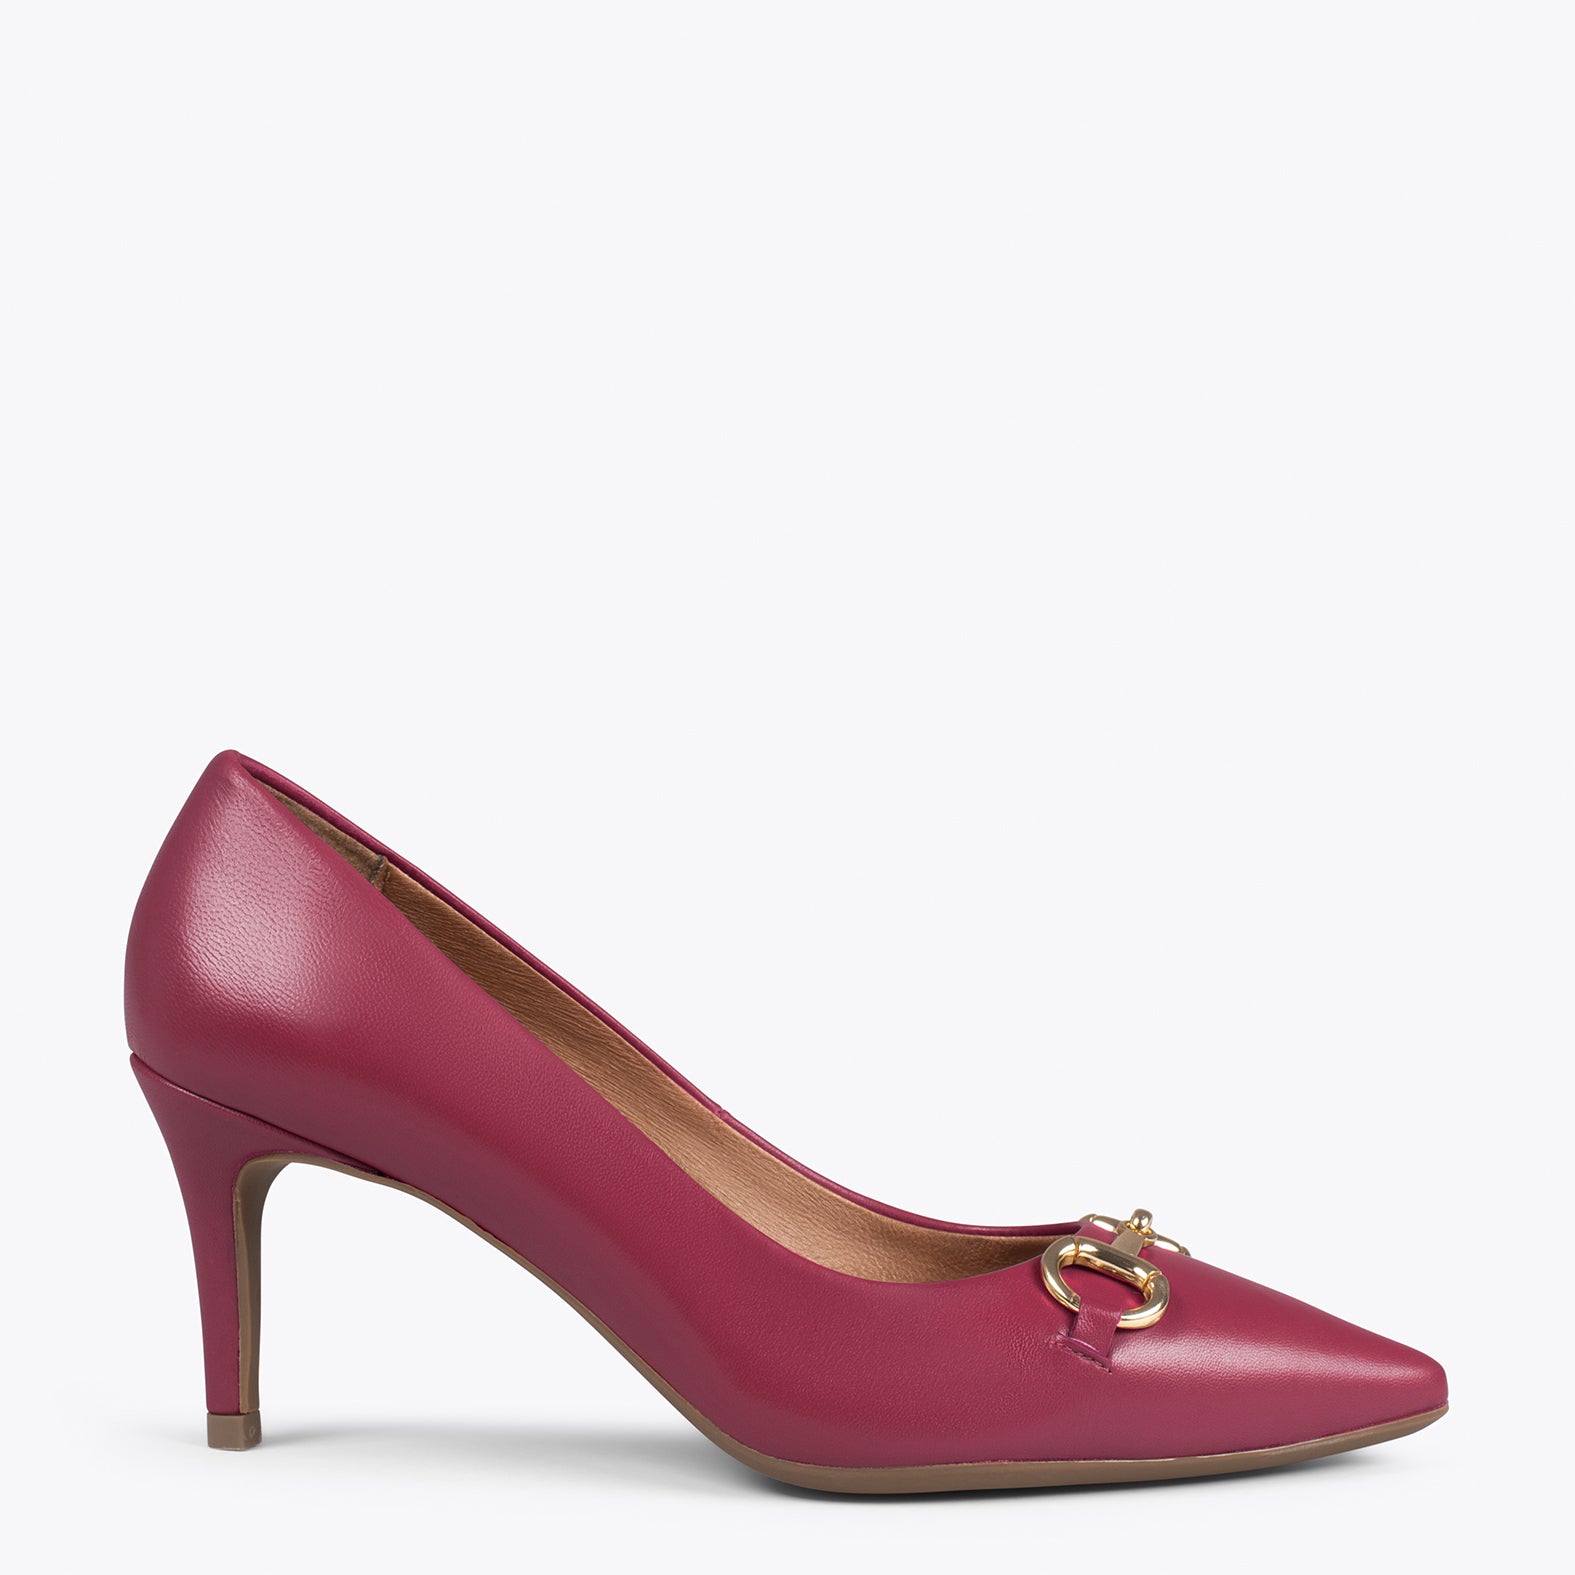 ELEGANCE – BURGUNDY stiletto heel with metallic detail